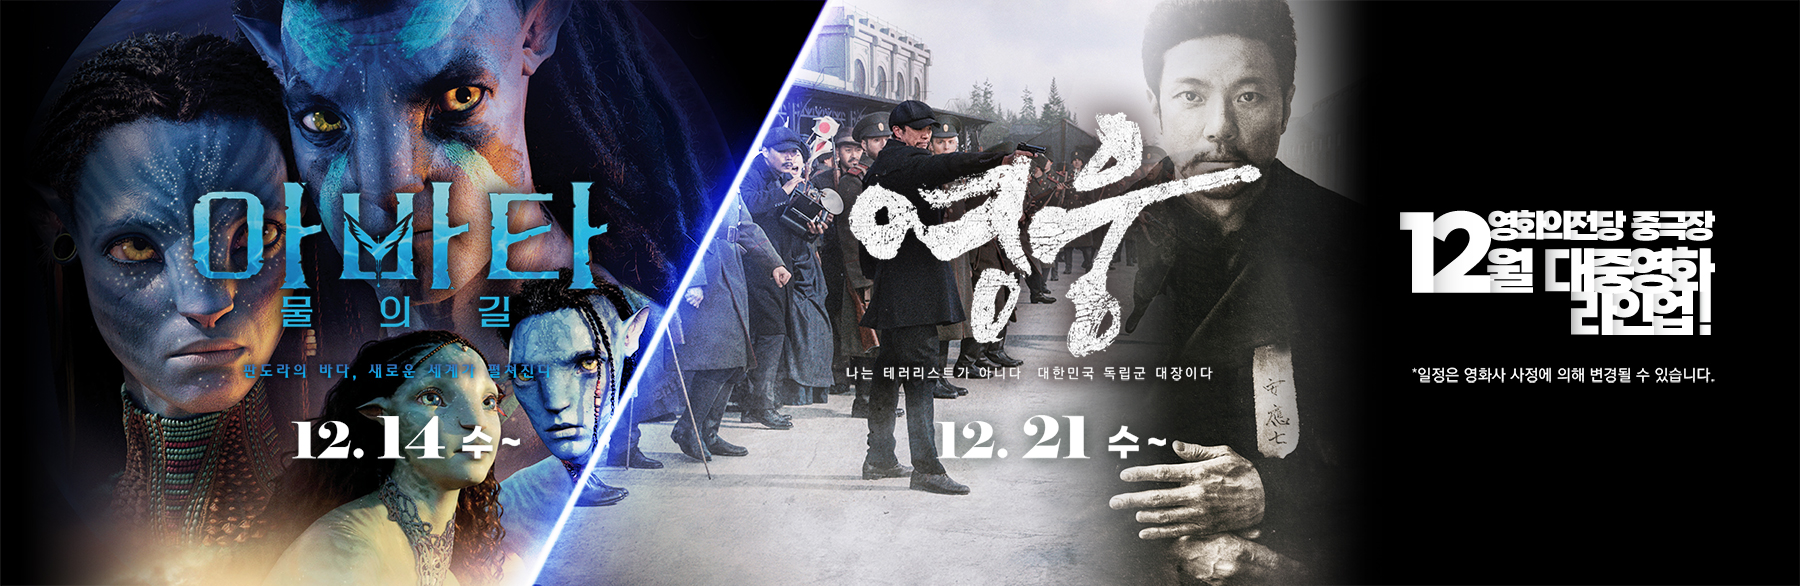 12월 대중영화 라인업 / 아바타: 물의 길 12.14(수)~ / 영웅 12.21(수)~